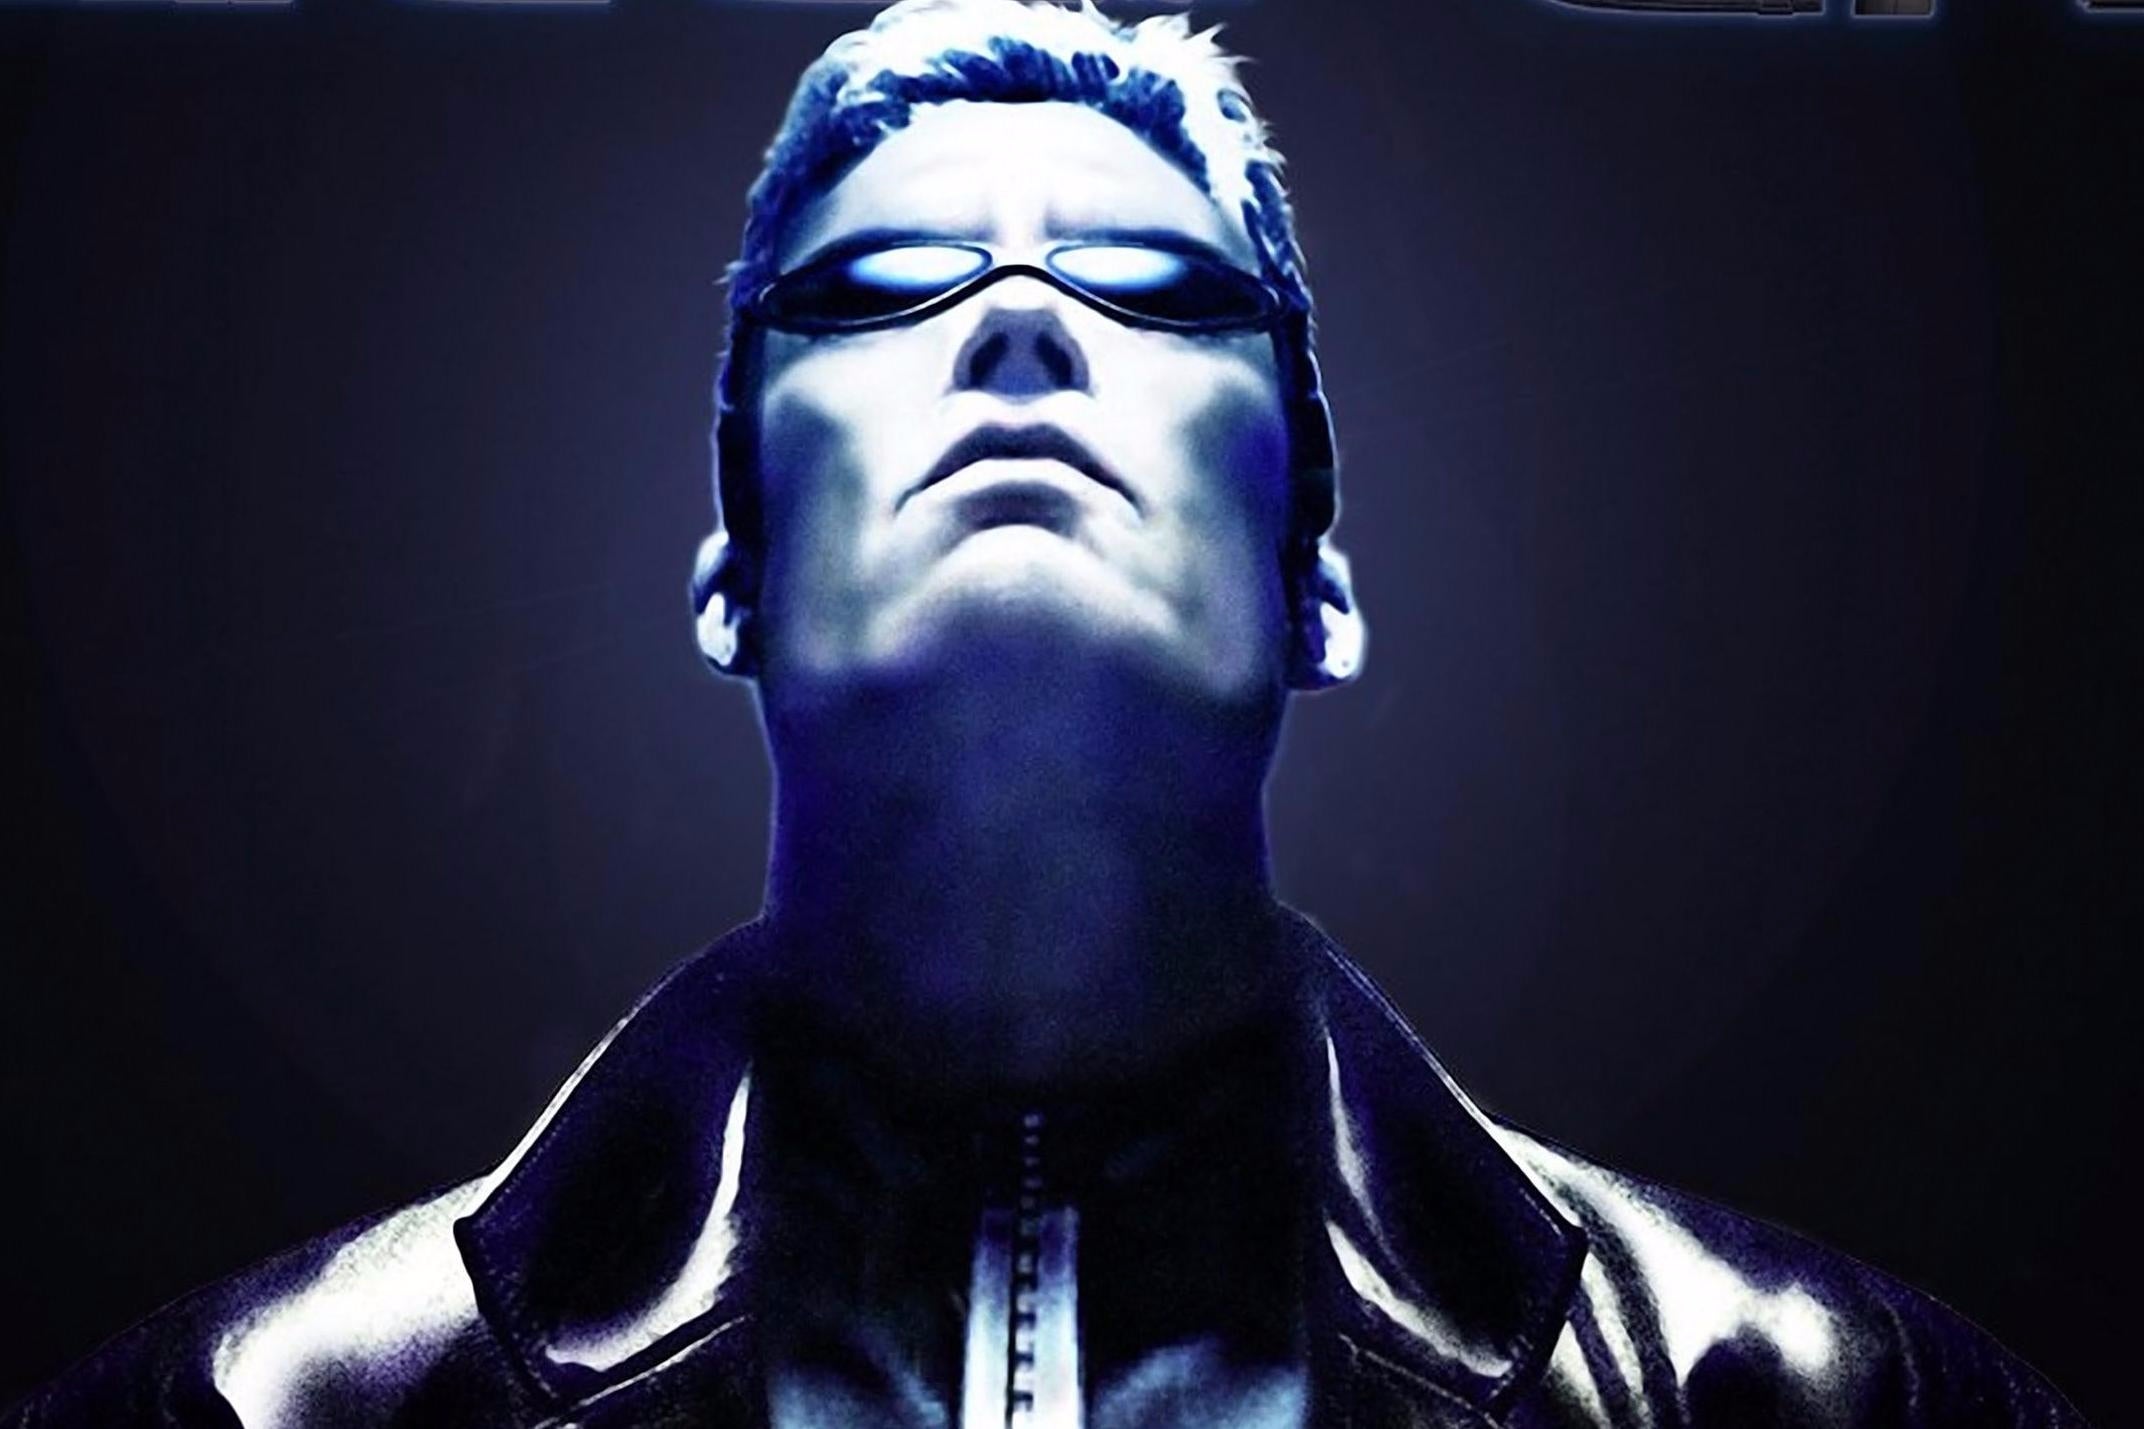 Immagine di Deus Ex: le iniziali del personaggio principale fanno riferimento a Gesù Cristo